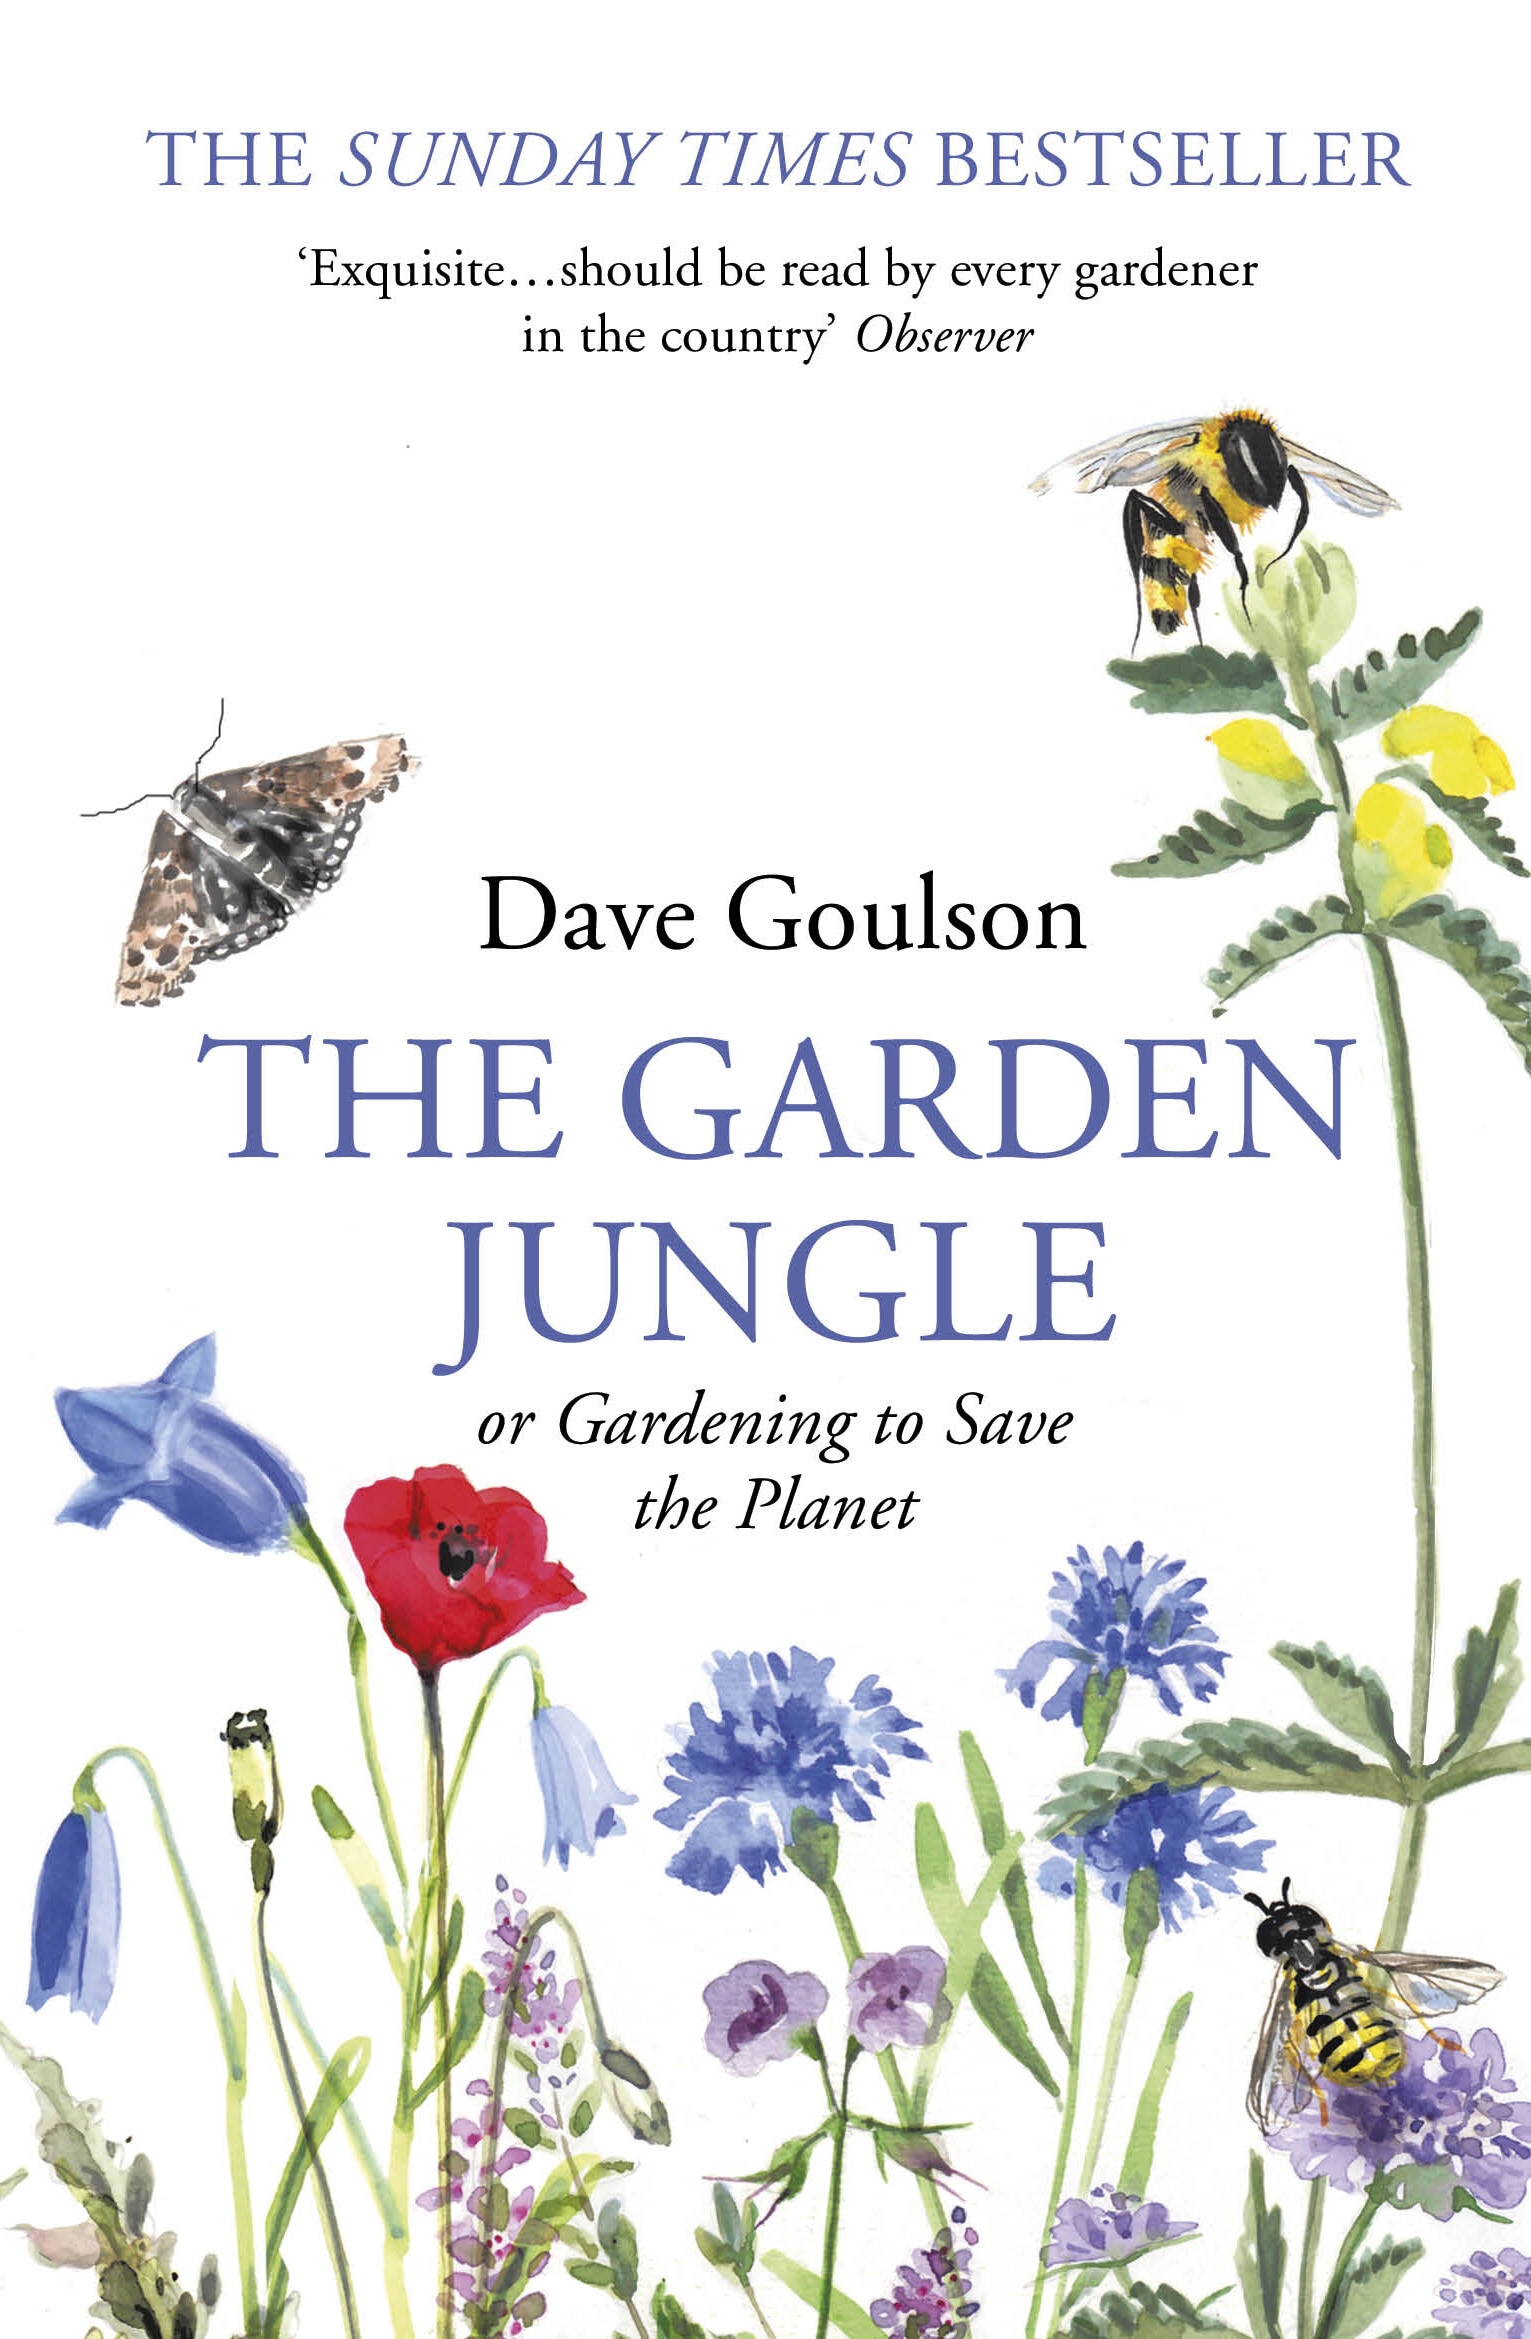 Book “The Garden Jungle” by Dave Goulson — April 2, 2020